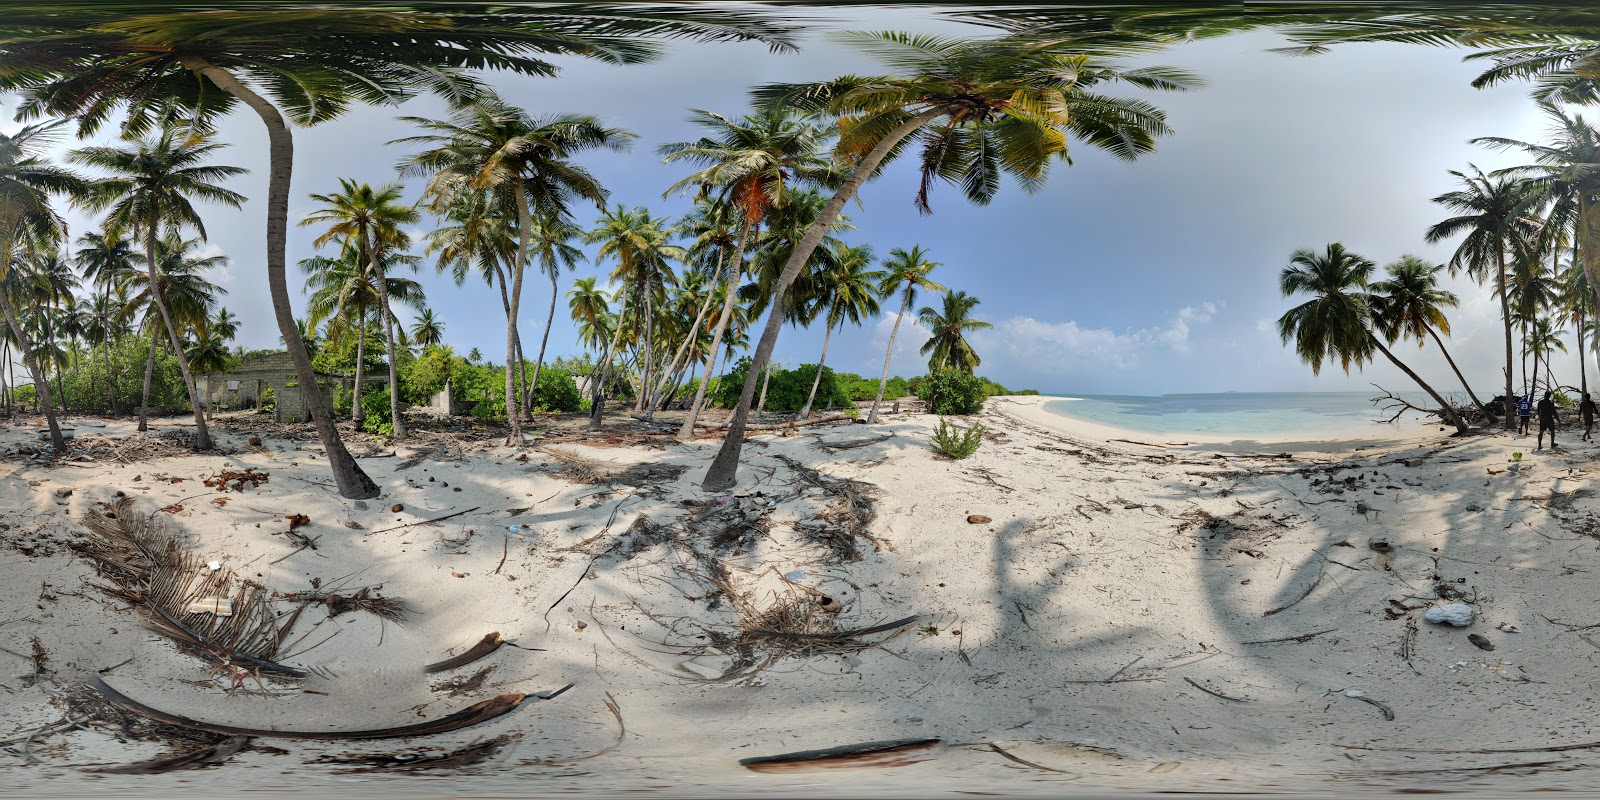 Foto av Hathifushi beach vildmarksområde